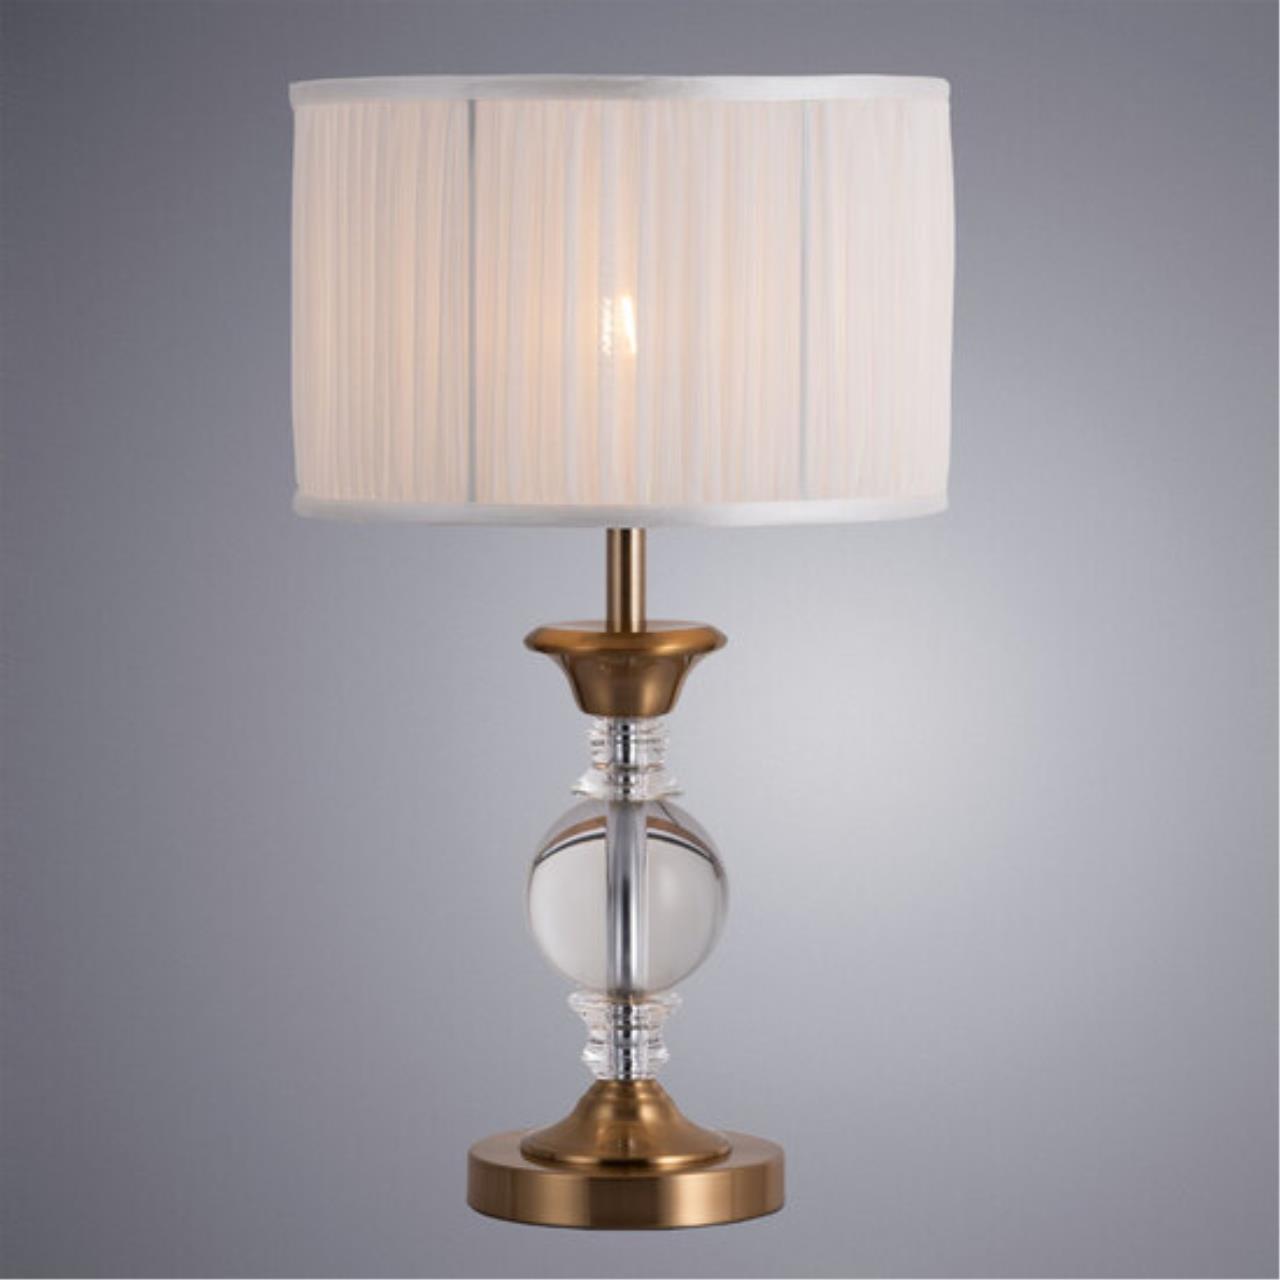 Интерьерная настольная лампа Arte lamp A1670LT-1PB